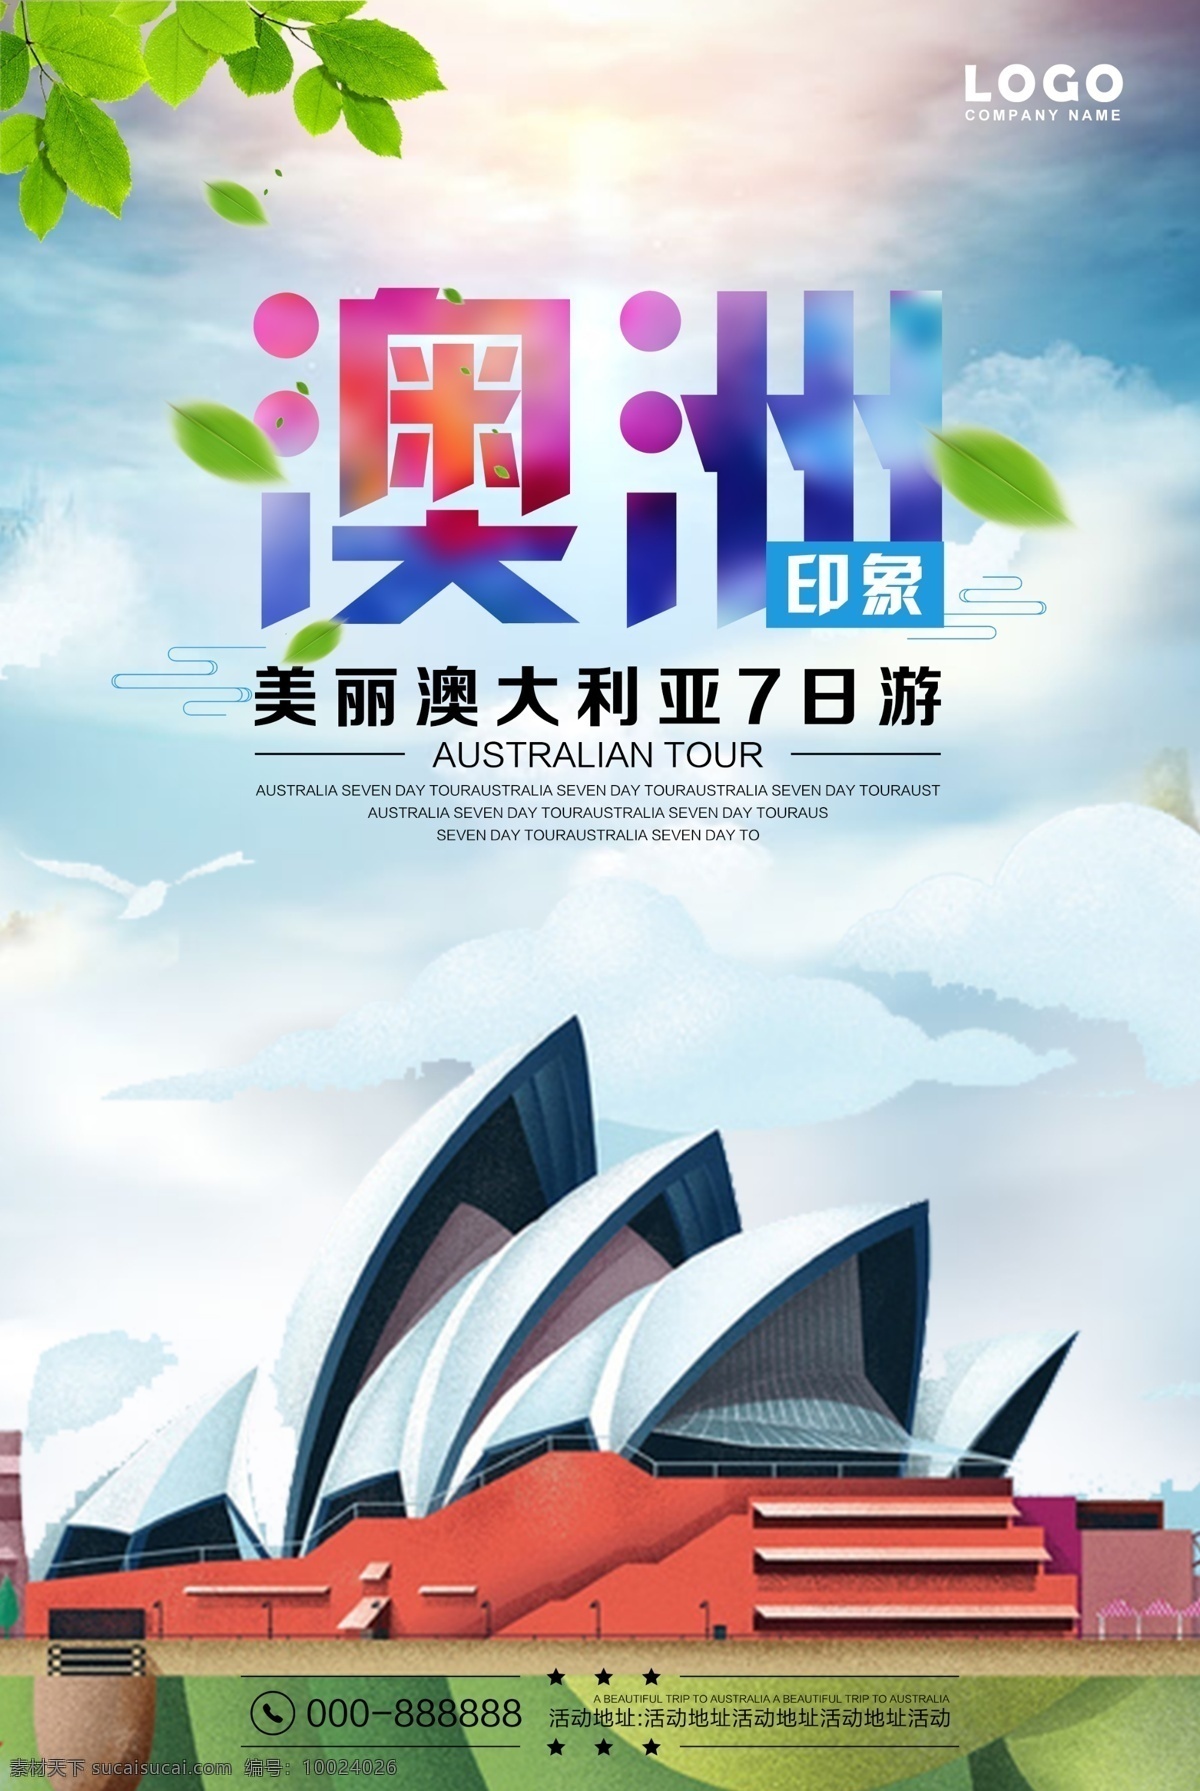 澳大利亚 旅游 海报 澳洲宣传海报 创意旅游海报 澳洲风情海报 澳洲印象 旅游文化 中国 风 psd分层 旅游展板